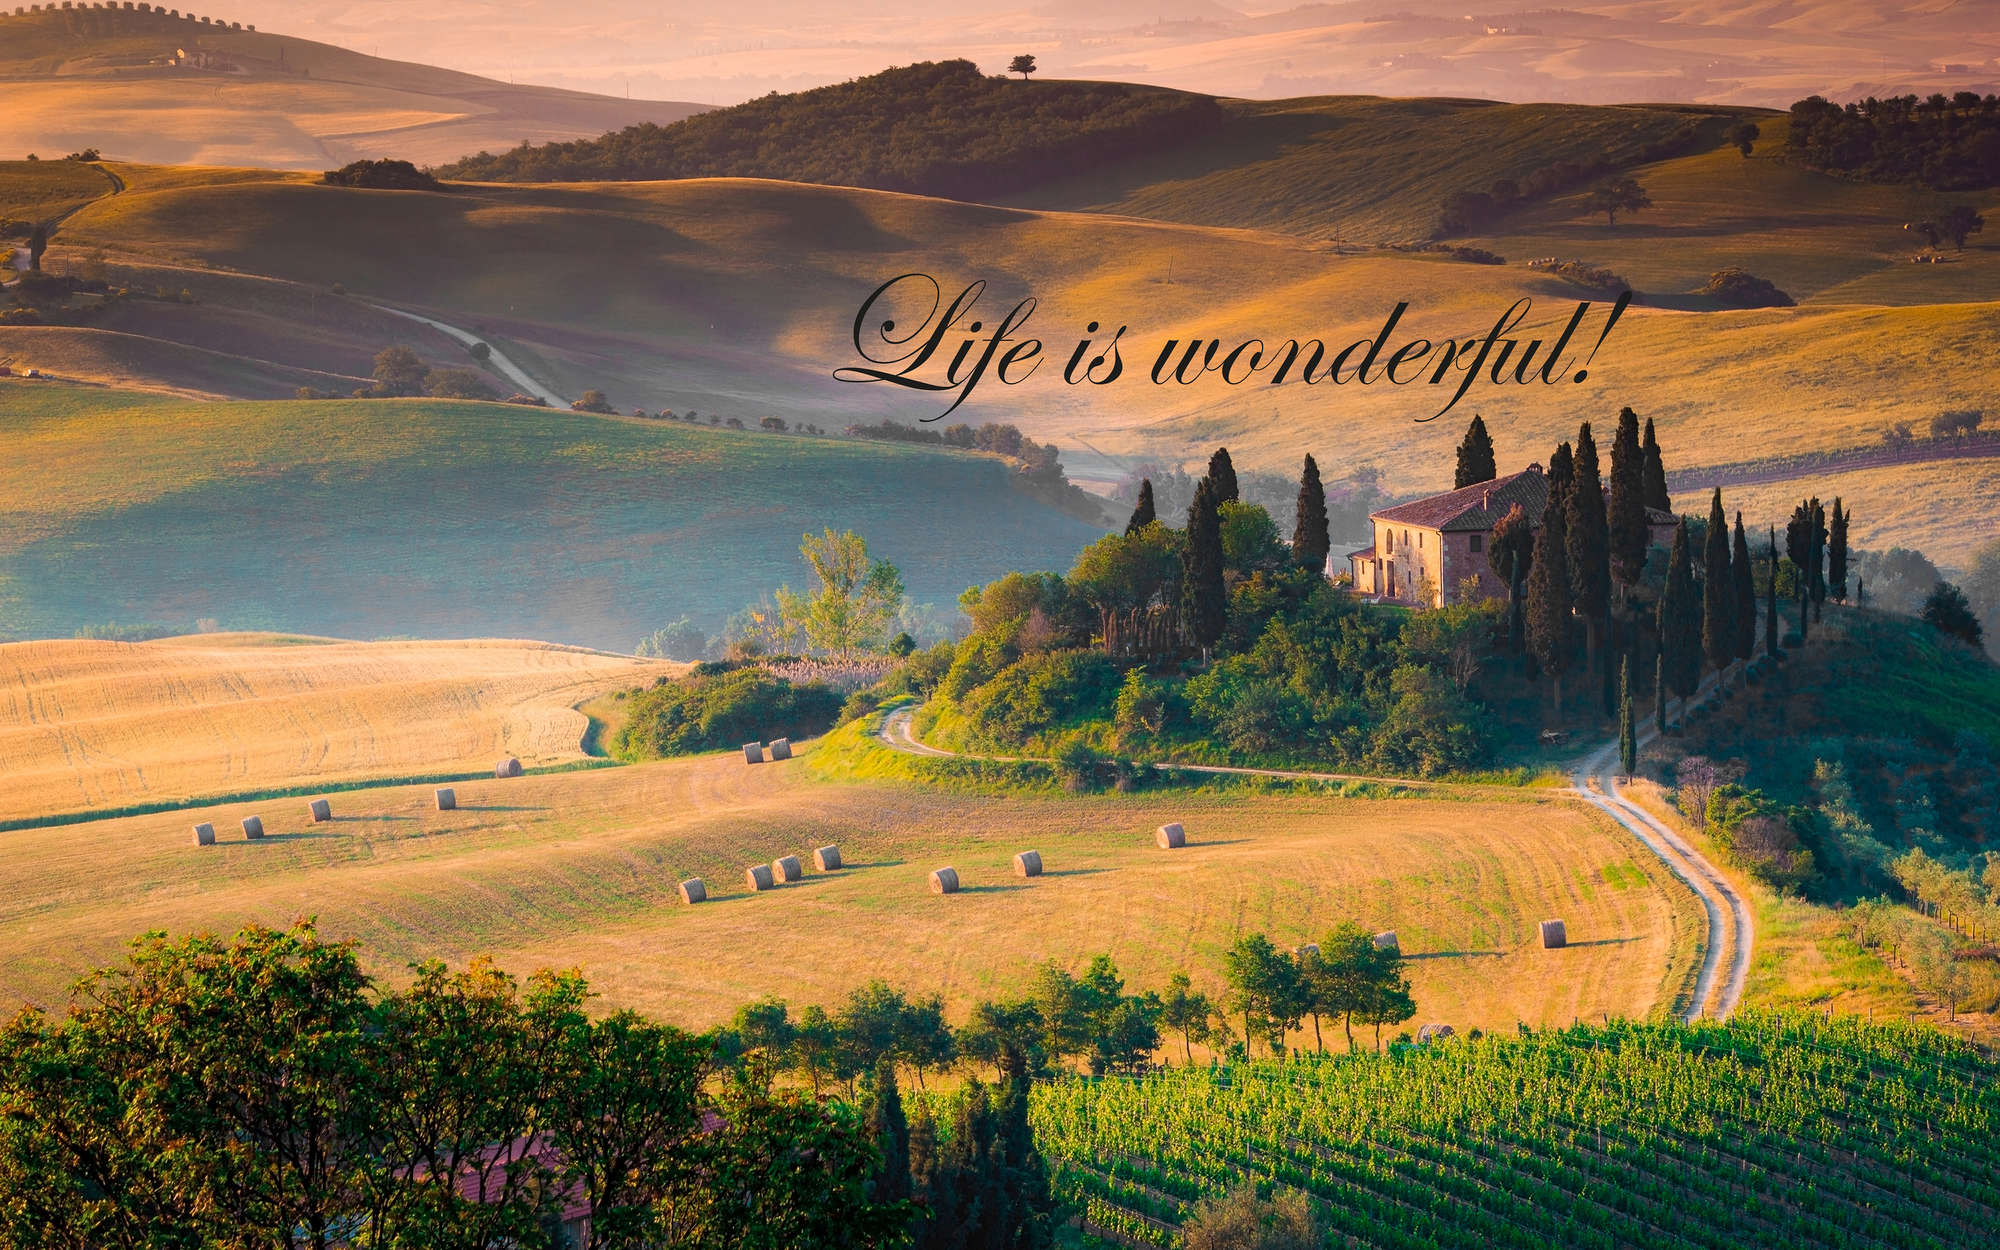             Fotomurali Toscana con scritta "La vita è meravigliosa!". - Pile liscio premium
        